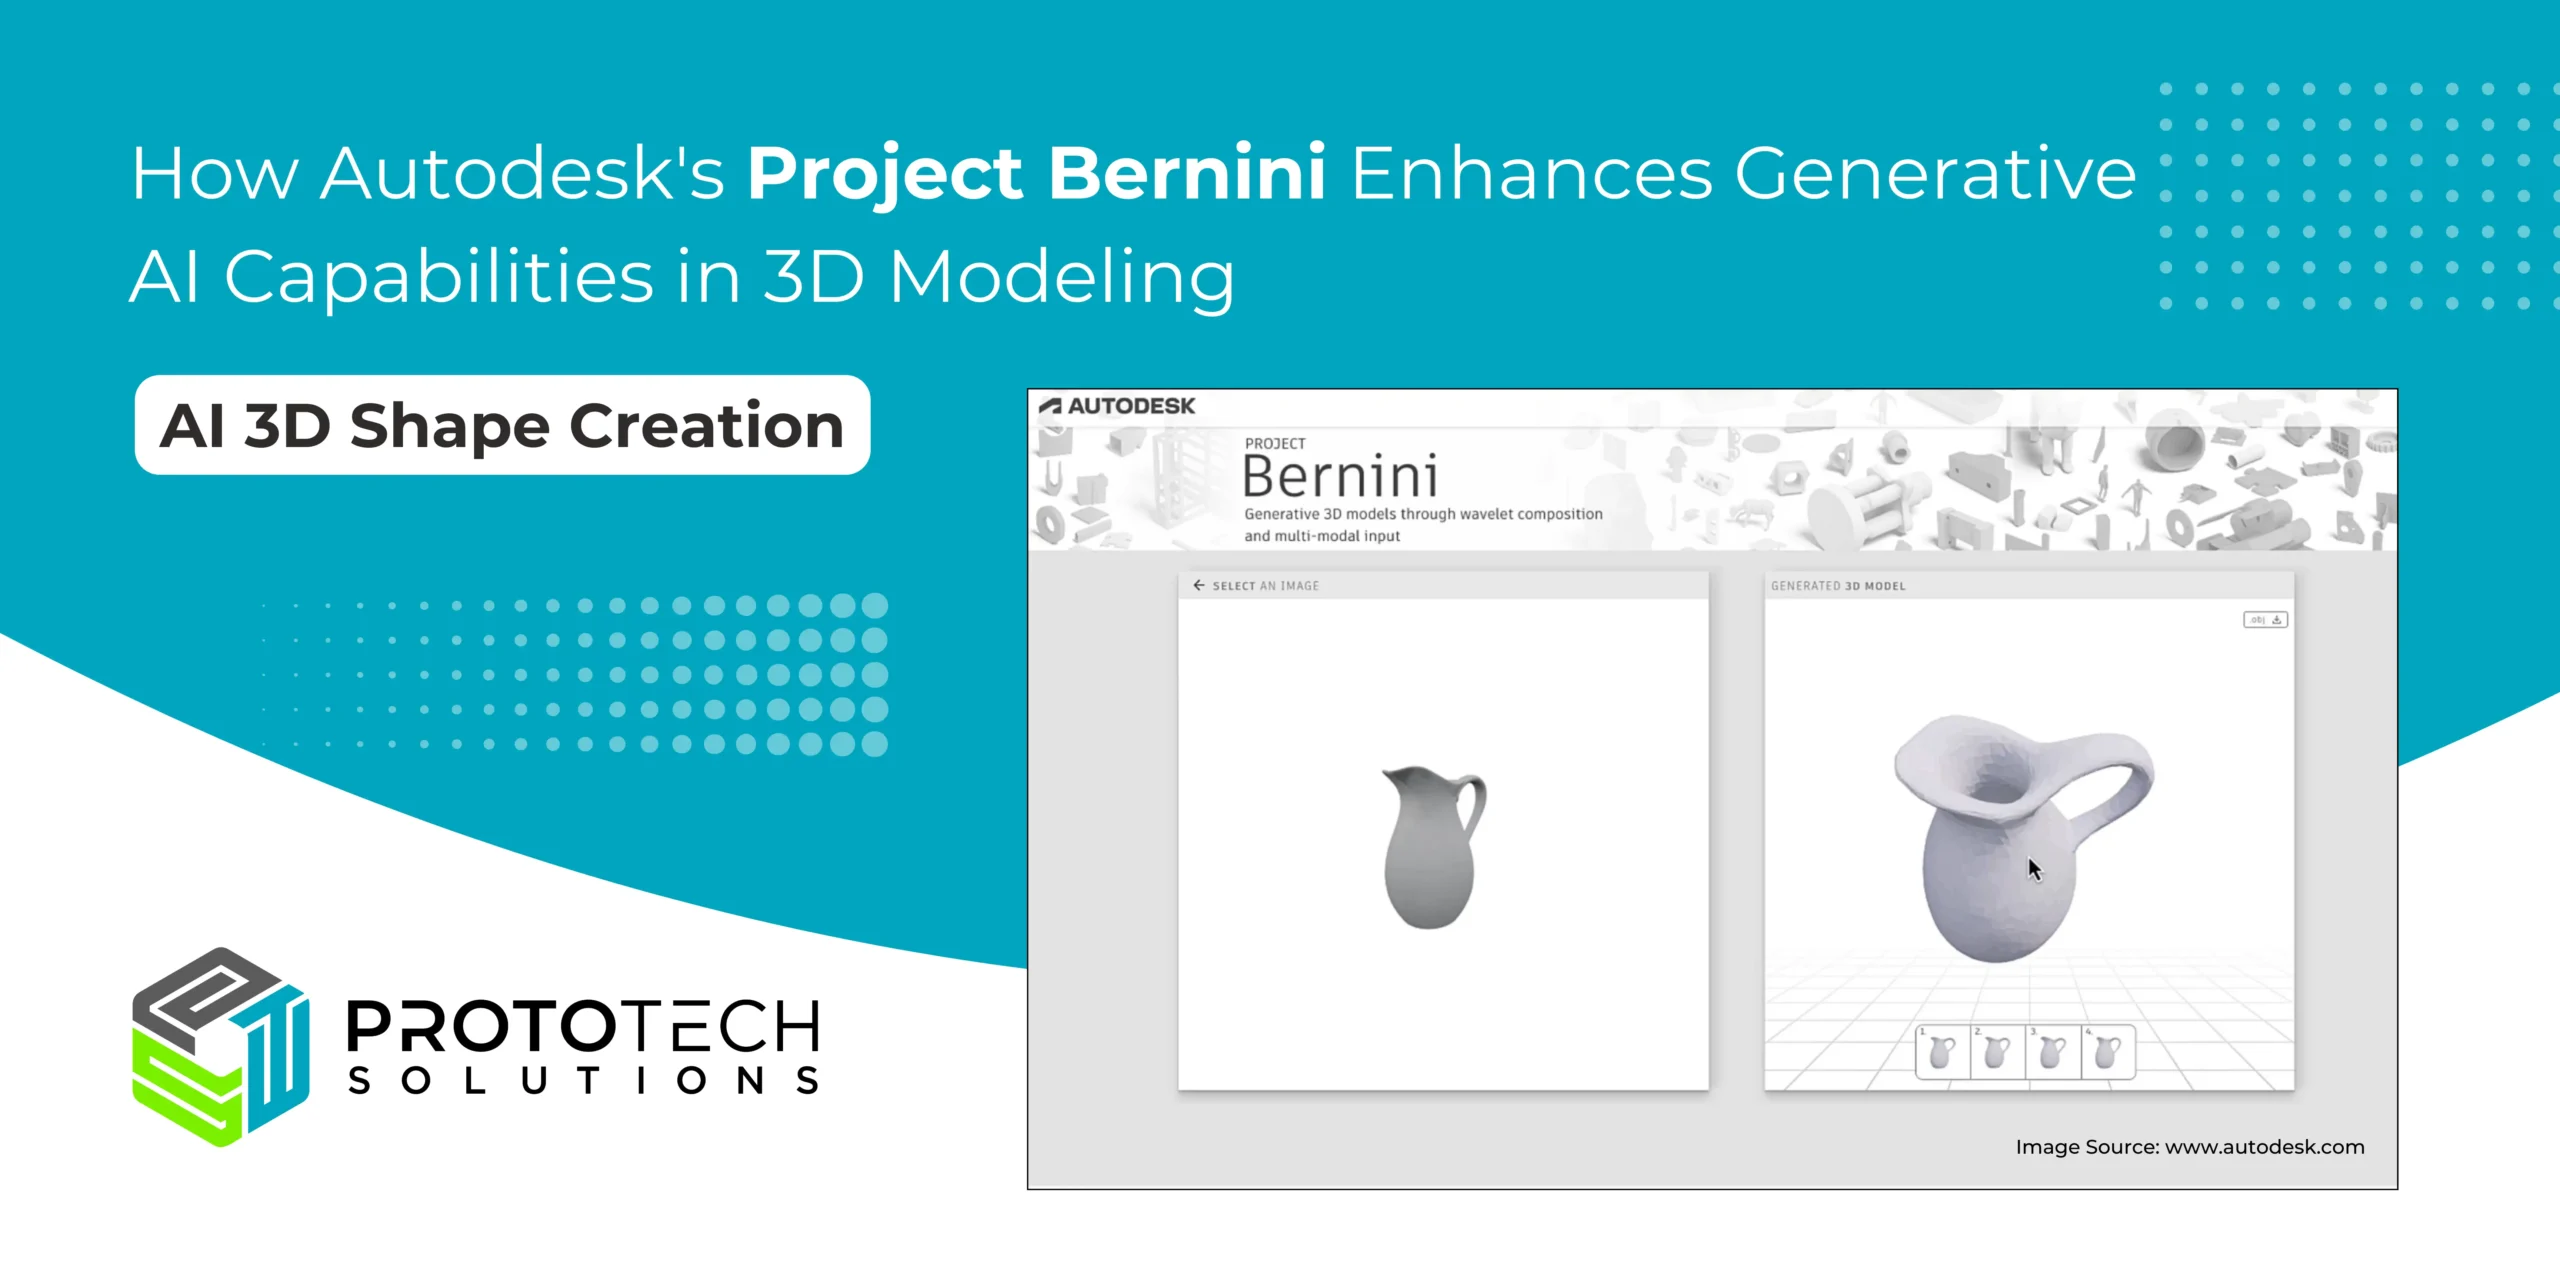 How Autodesk's Project Bernini Enhances Generative AI Capabilities in 3D Modeling